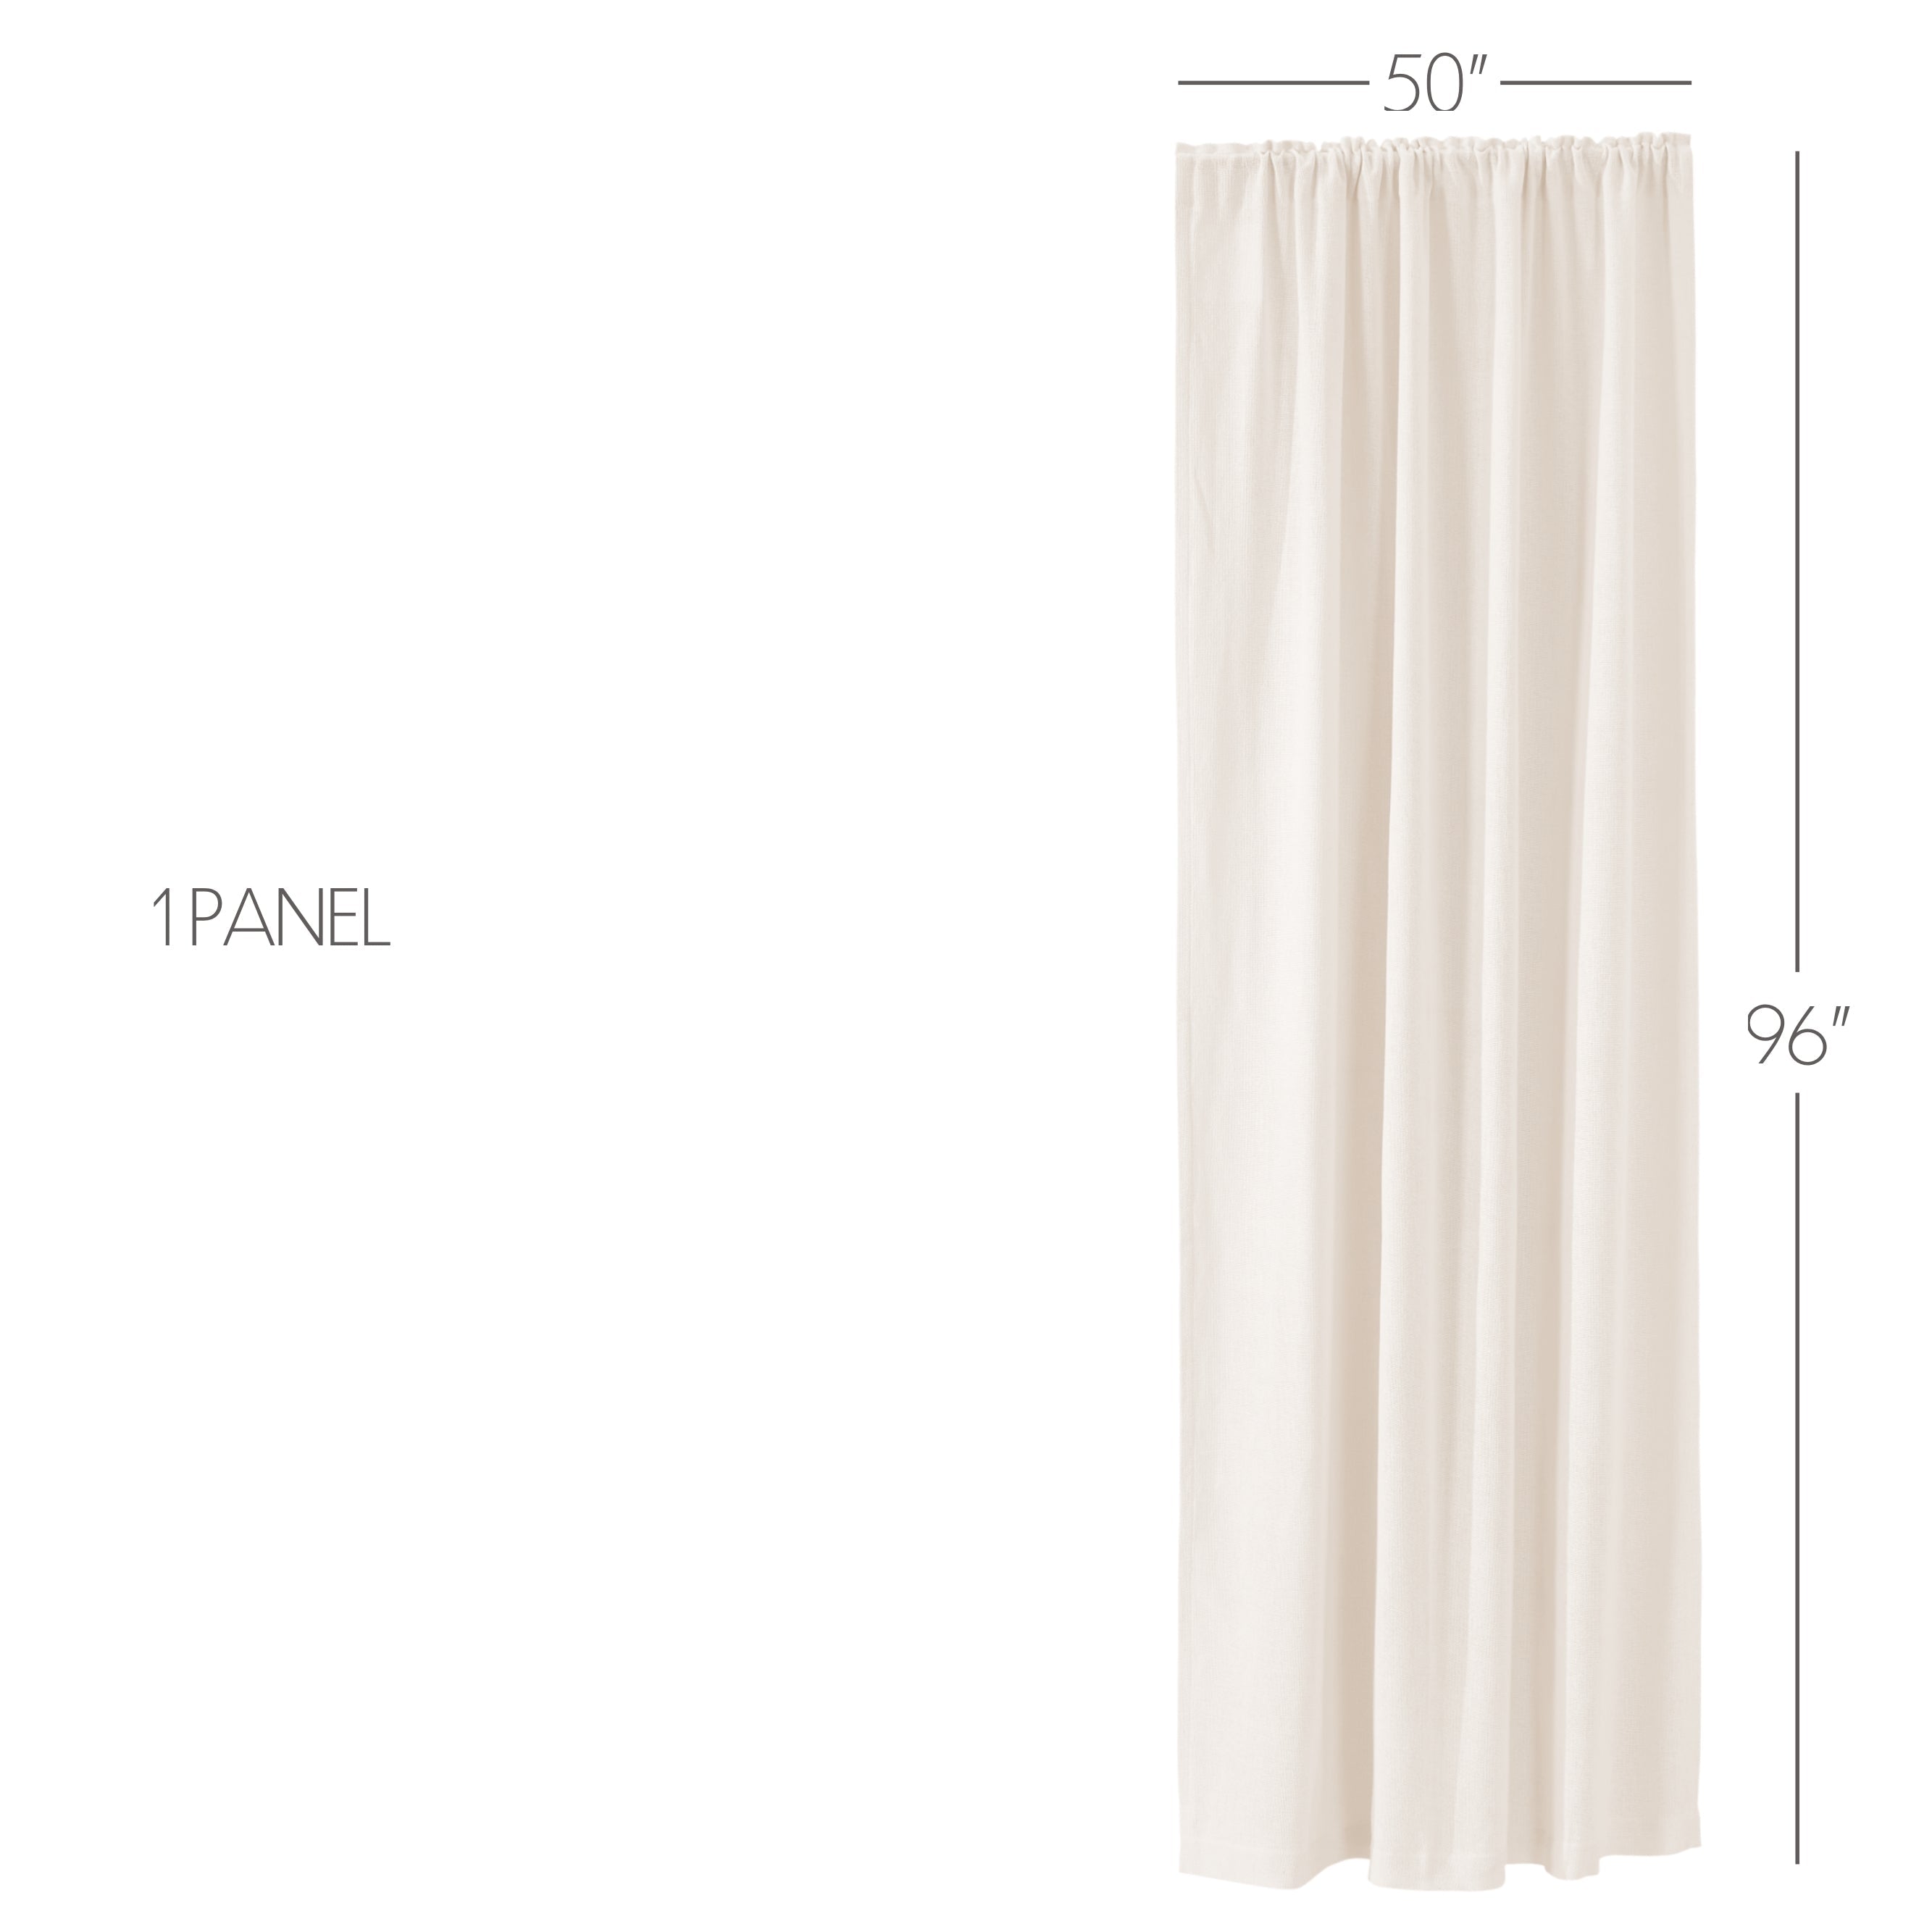 Burlap Antique White Panel Curtain 96"x50" VHC Brands